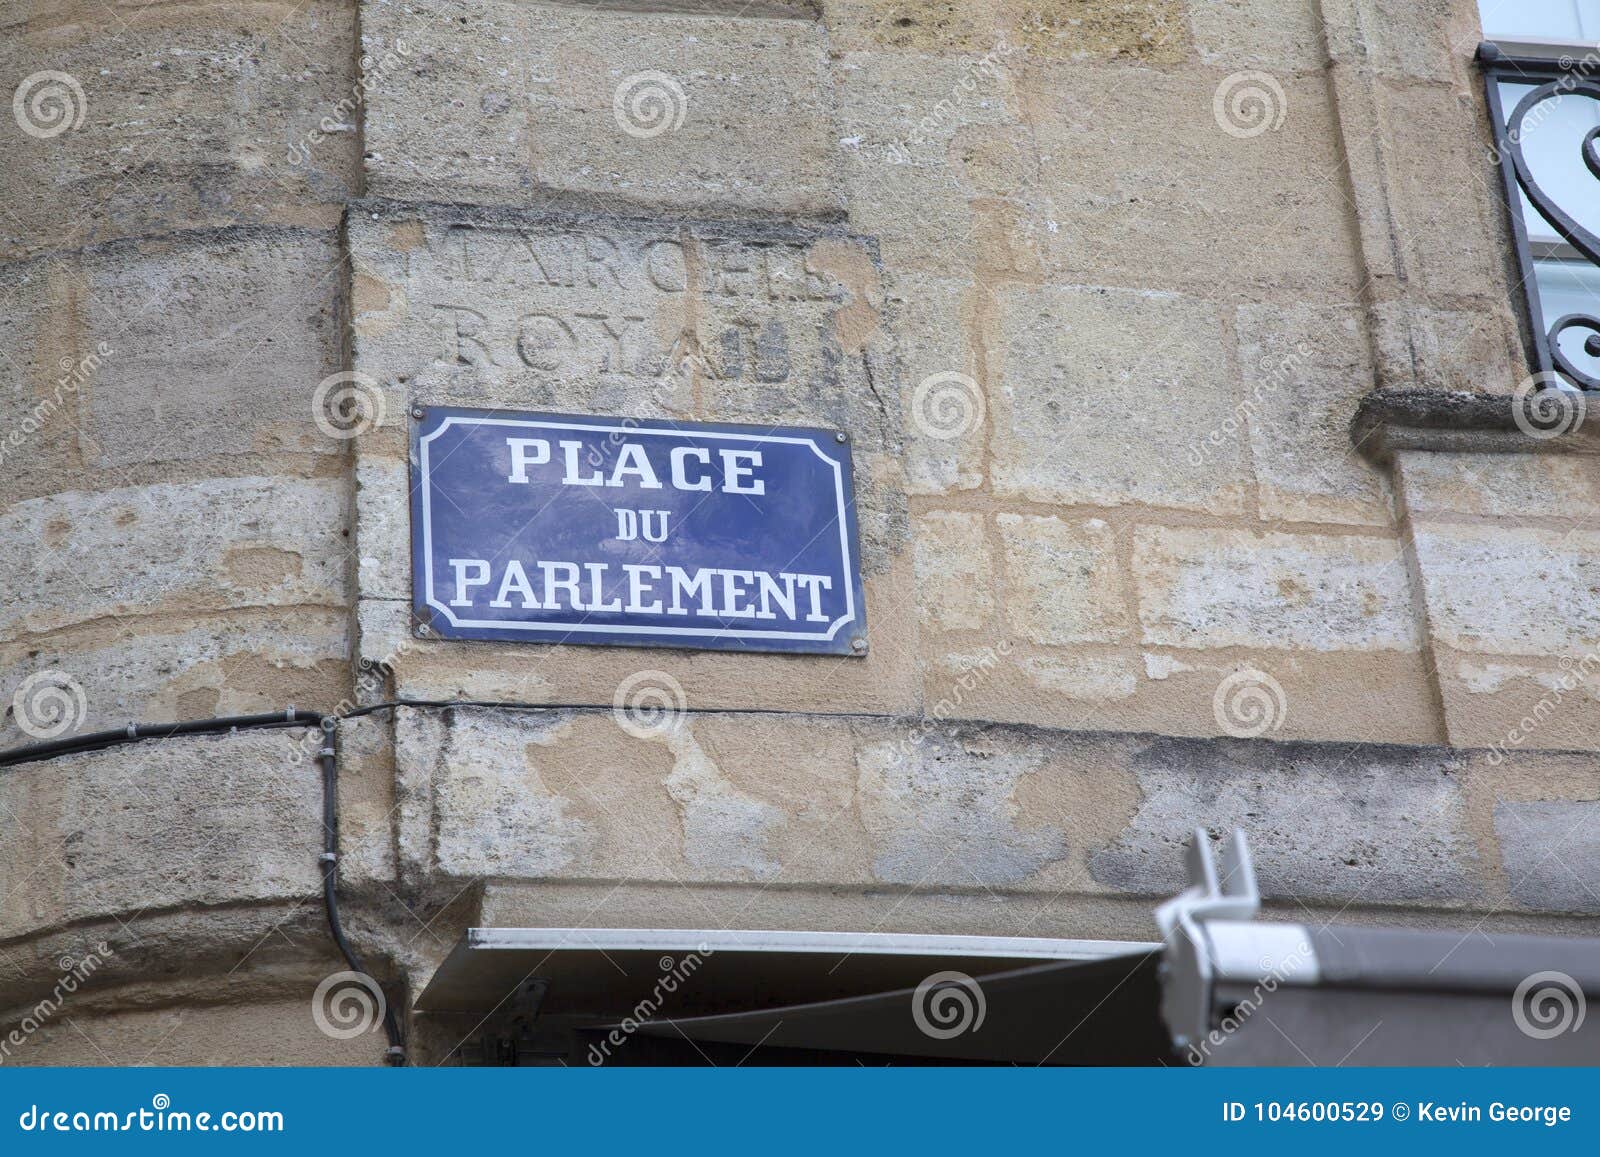 street sign, parlement square, bordeaux